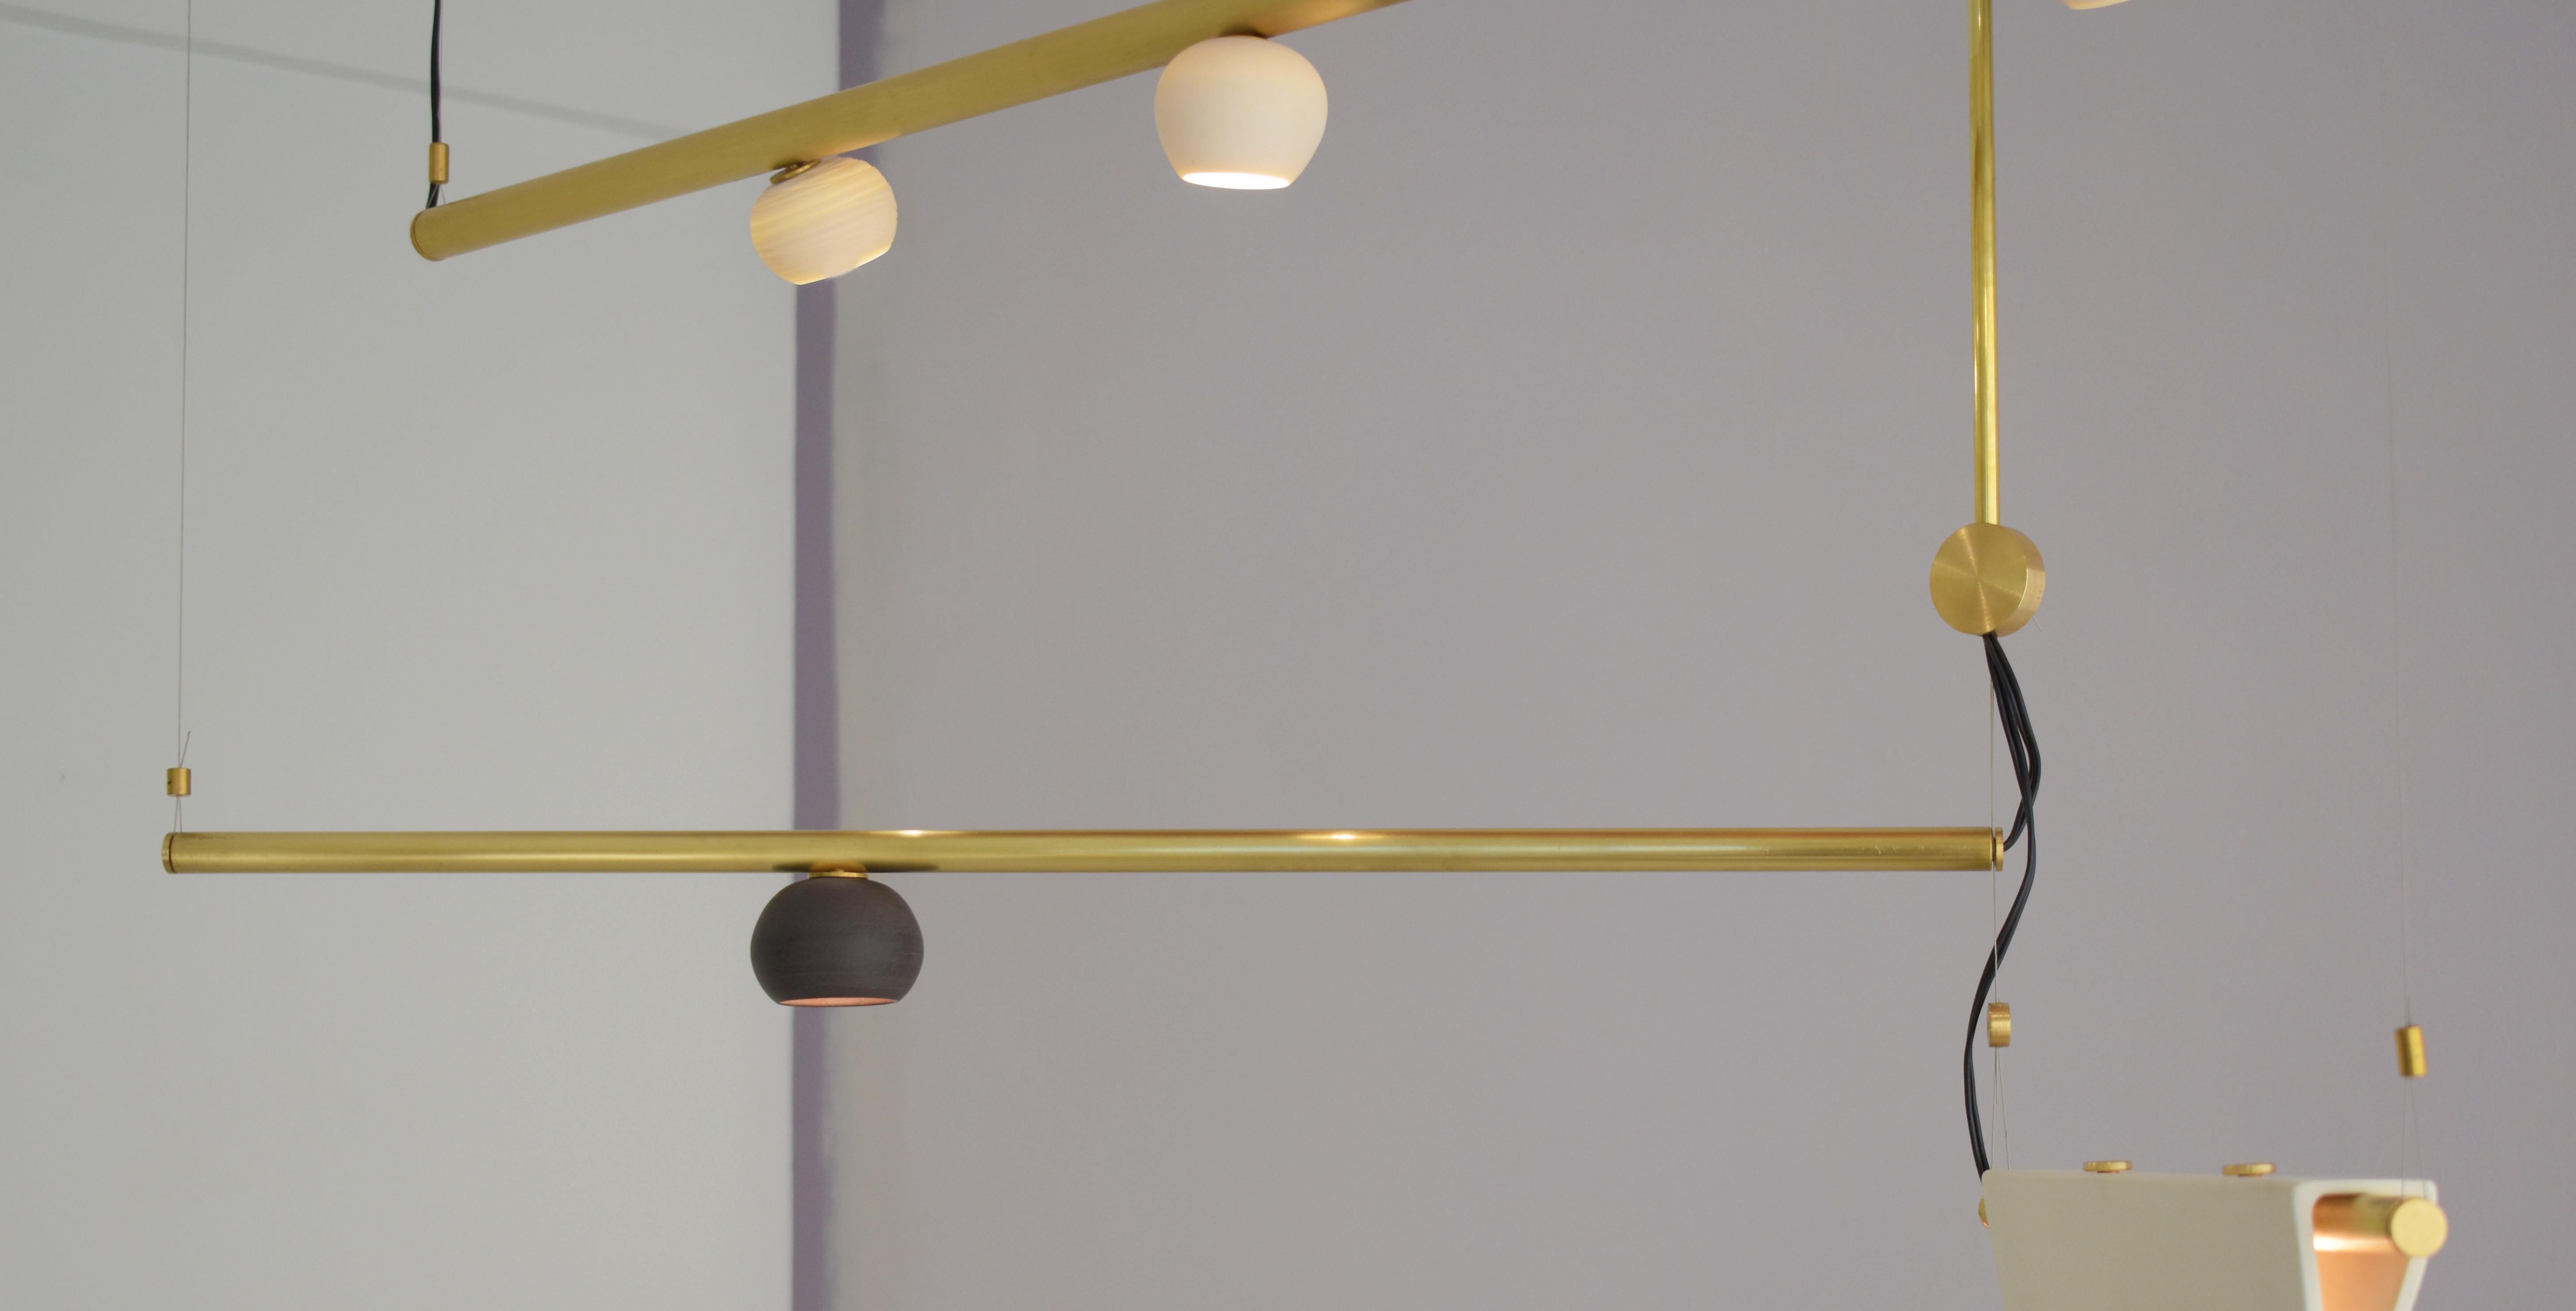 Skulpturale Lichtaufhängung aus Messing - My Queen III - Signiert Periclis Frementitis
Abmessungen: 120 x 70 x 15 cm
Materialien: Geformtes Messing, Porzellan, LED-Lampen.
Limitierte Auflage von 7 Stück pro Jahr
Spezifikationen der Glühbirne
G4 LED